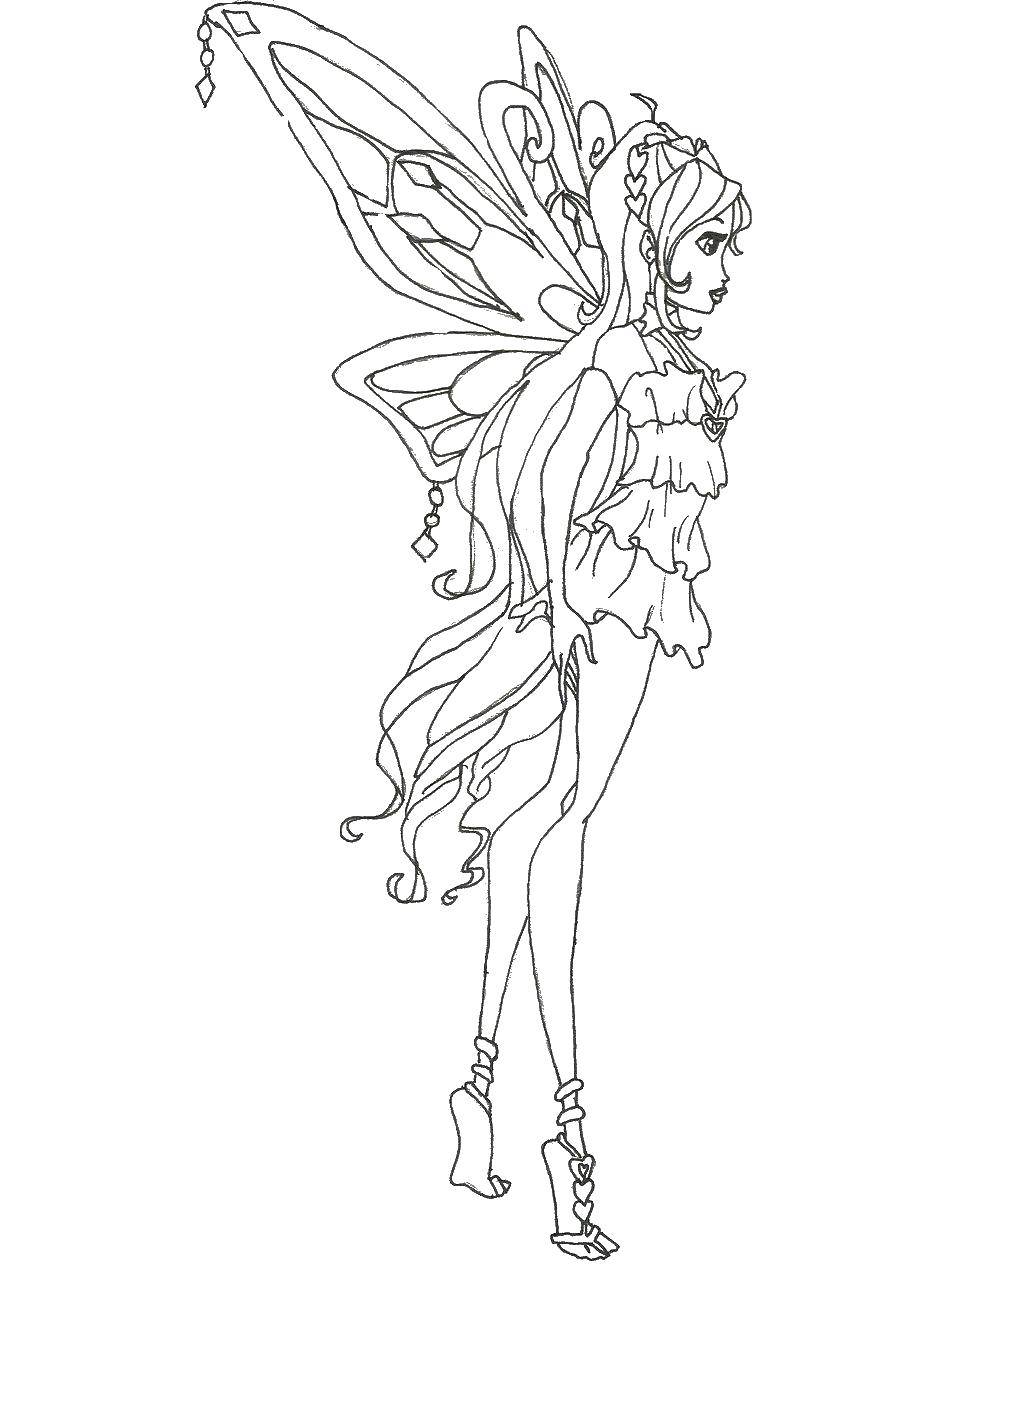 Название: Раскраска Девушка с крыльями. Категория: Винкс клуб. Теги: девушка, крылья, фея.